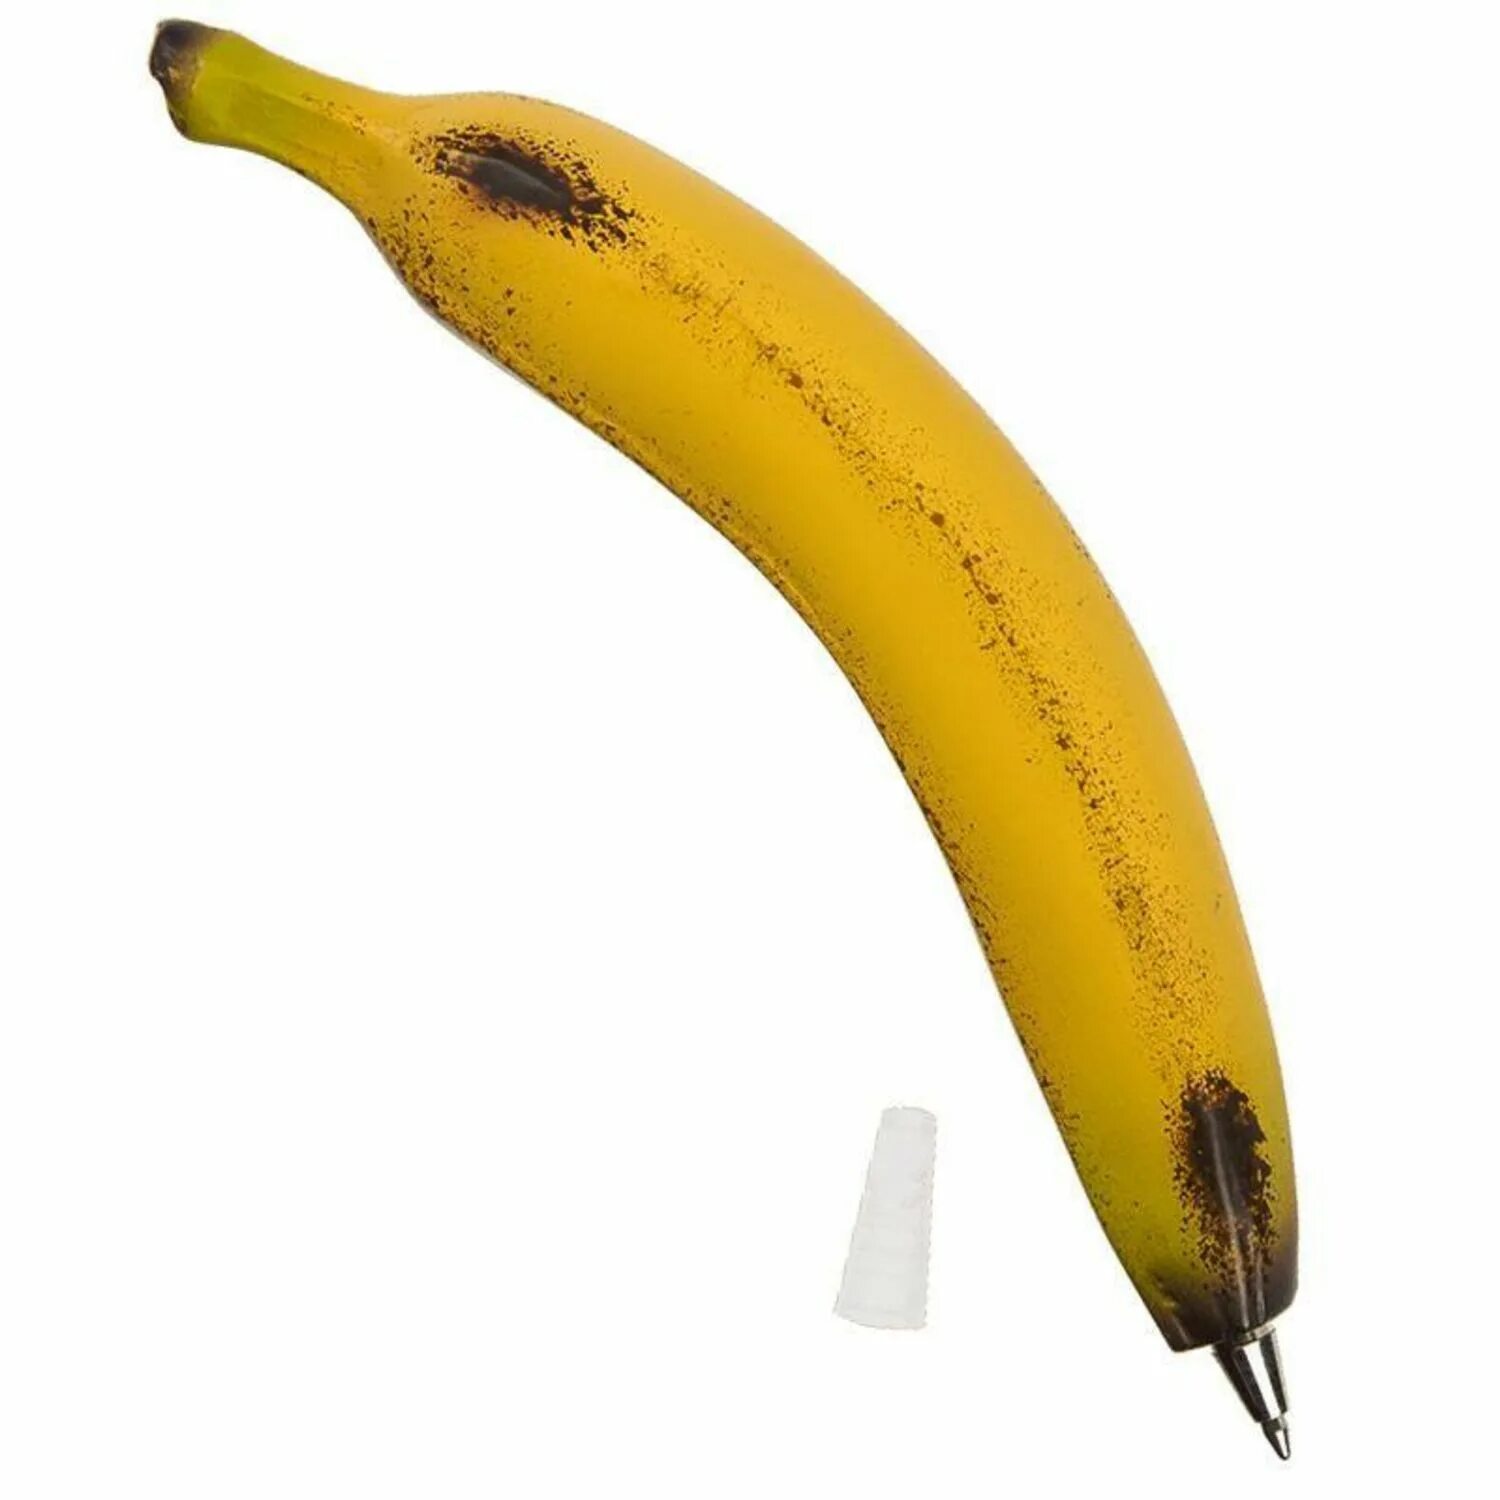 Биг банана пенсил. Биг Грин пенсил. Биг Блэк банана Пенсел. Блэк пенсил Грин пенсил Биг банана пенсил Чамба. Банана пенсил